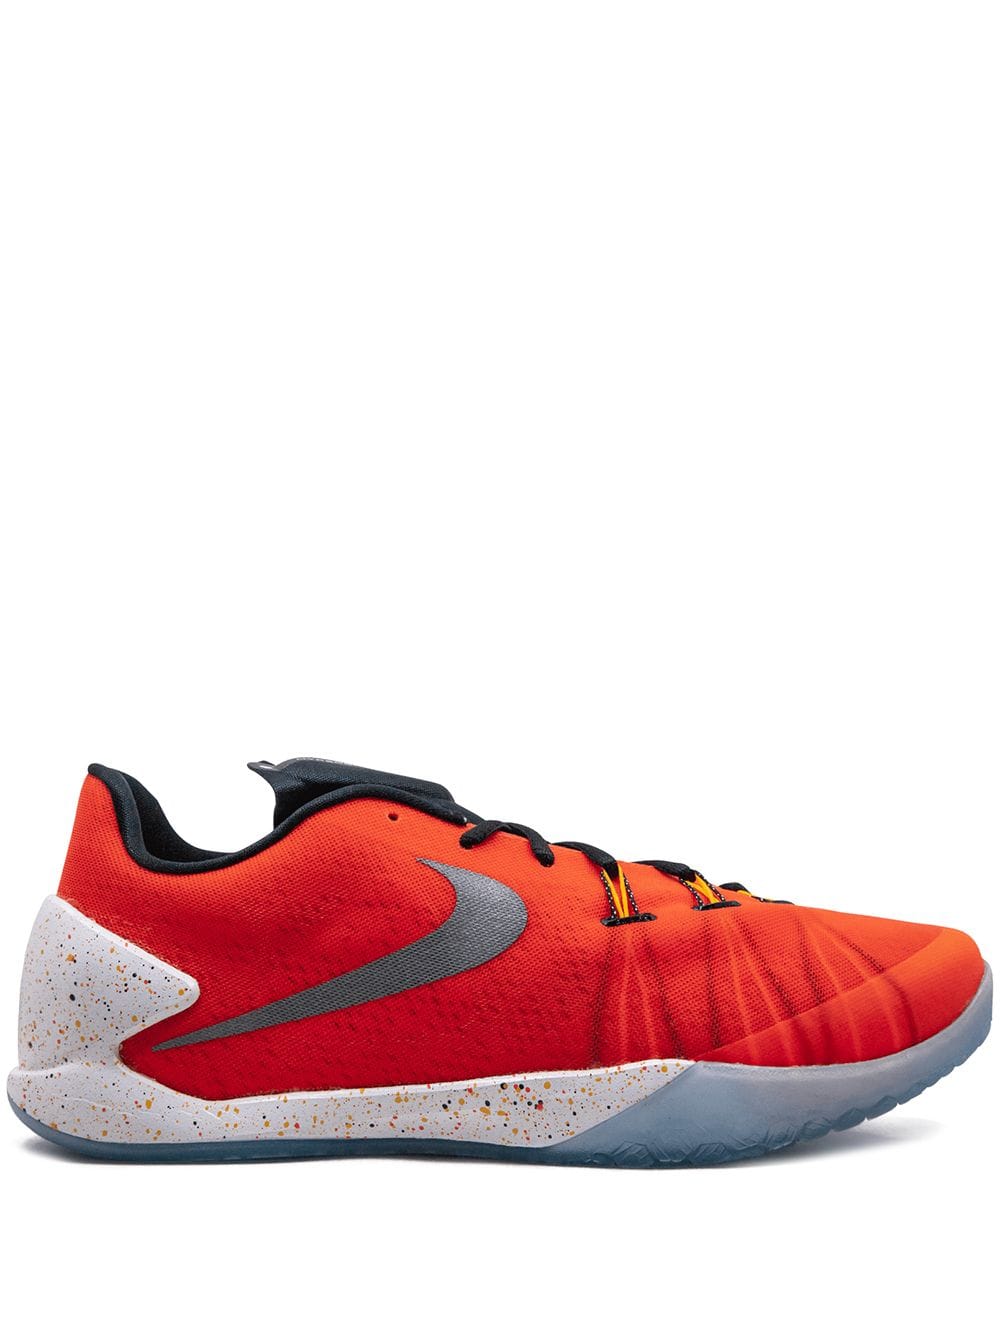 Nike Hyperchase PRM (705369-601 